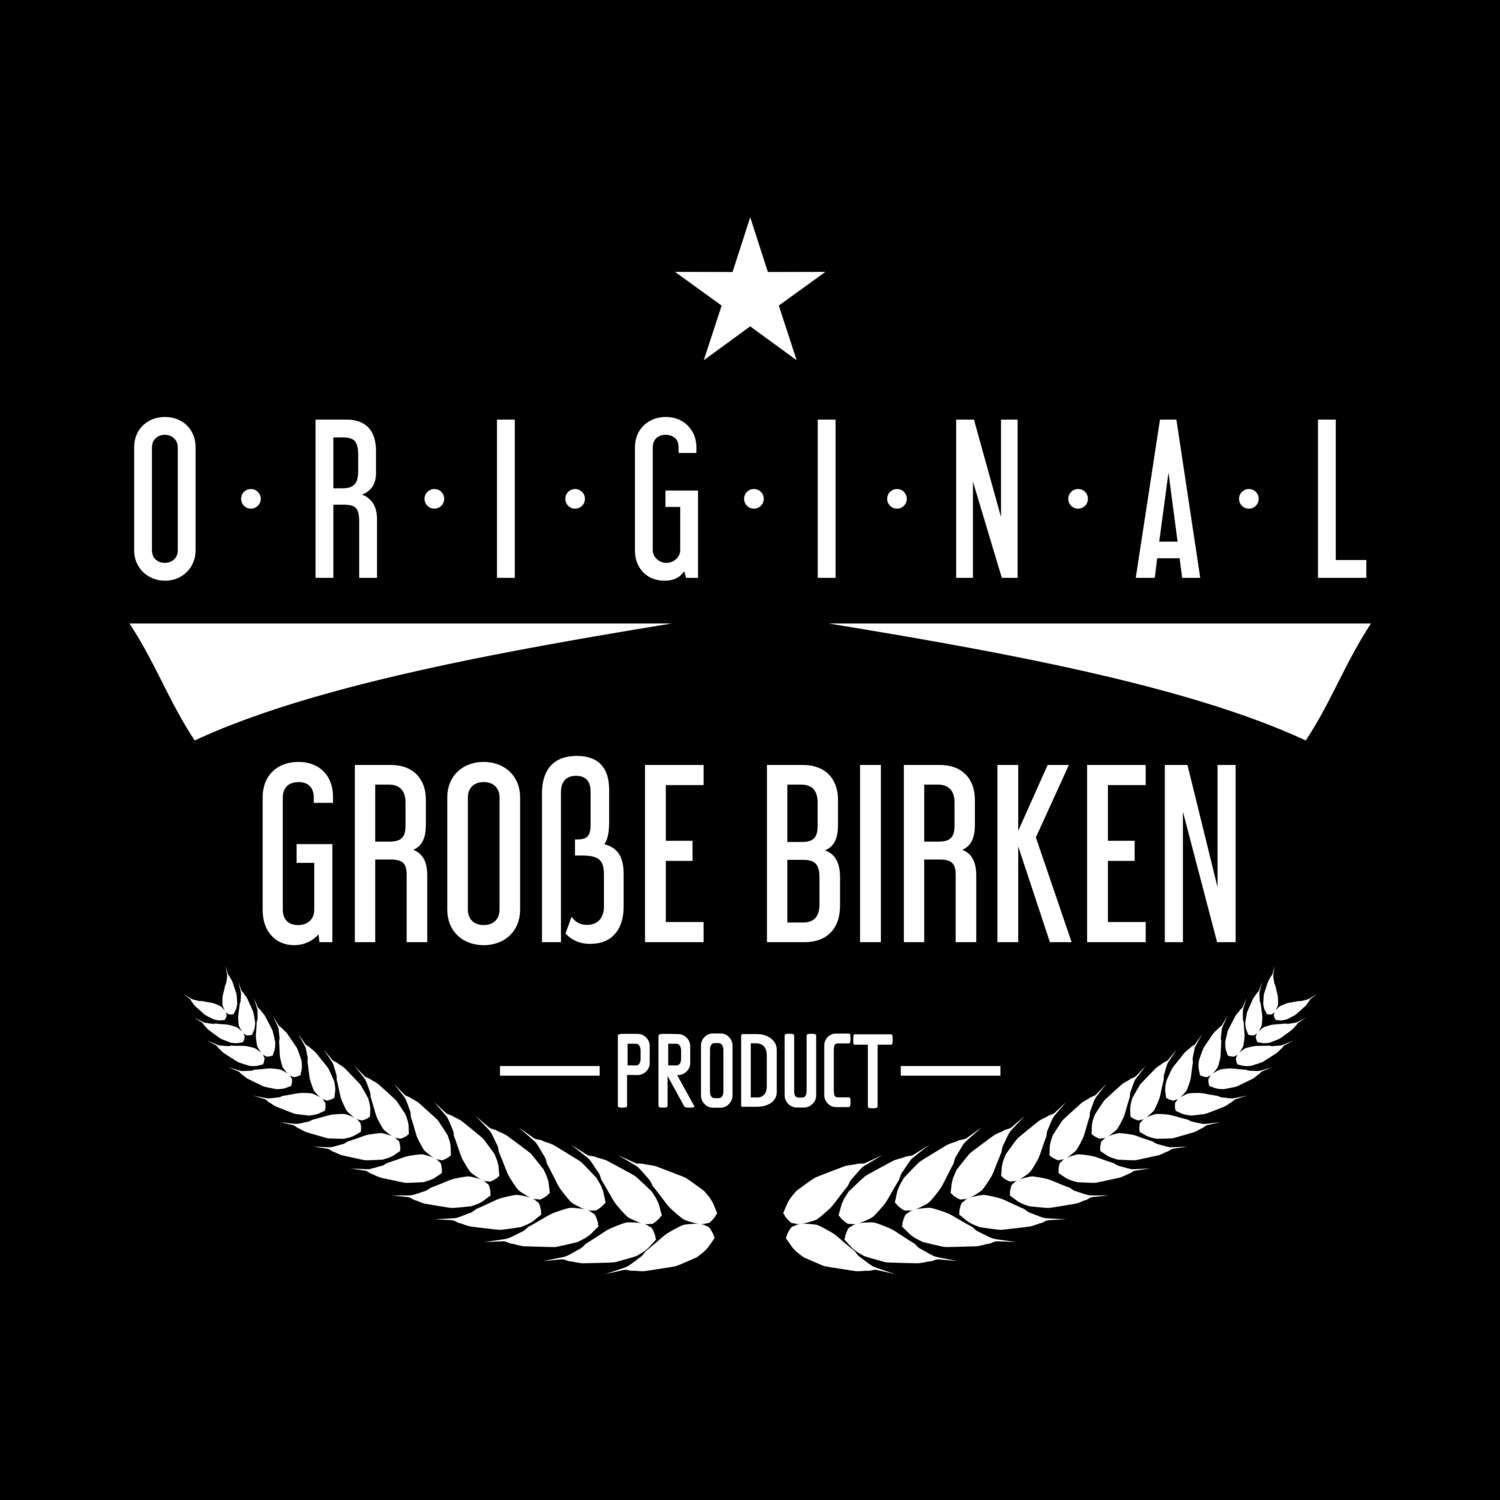 Große Birken T-Shirt »Original Product«